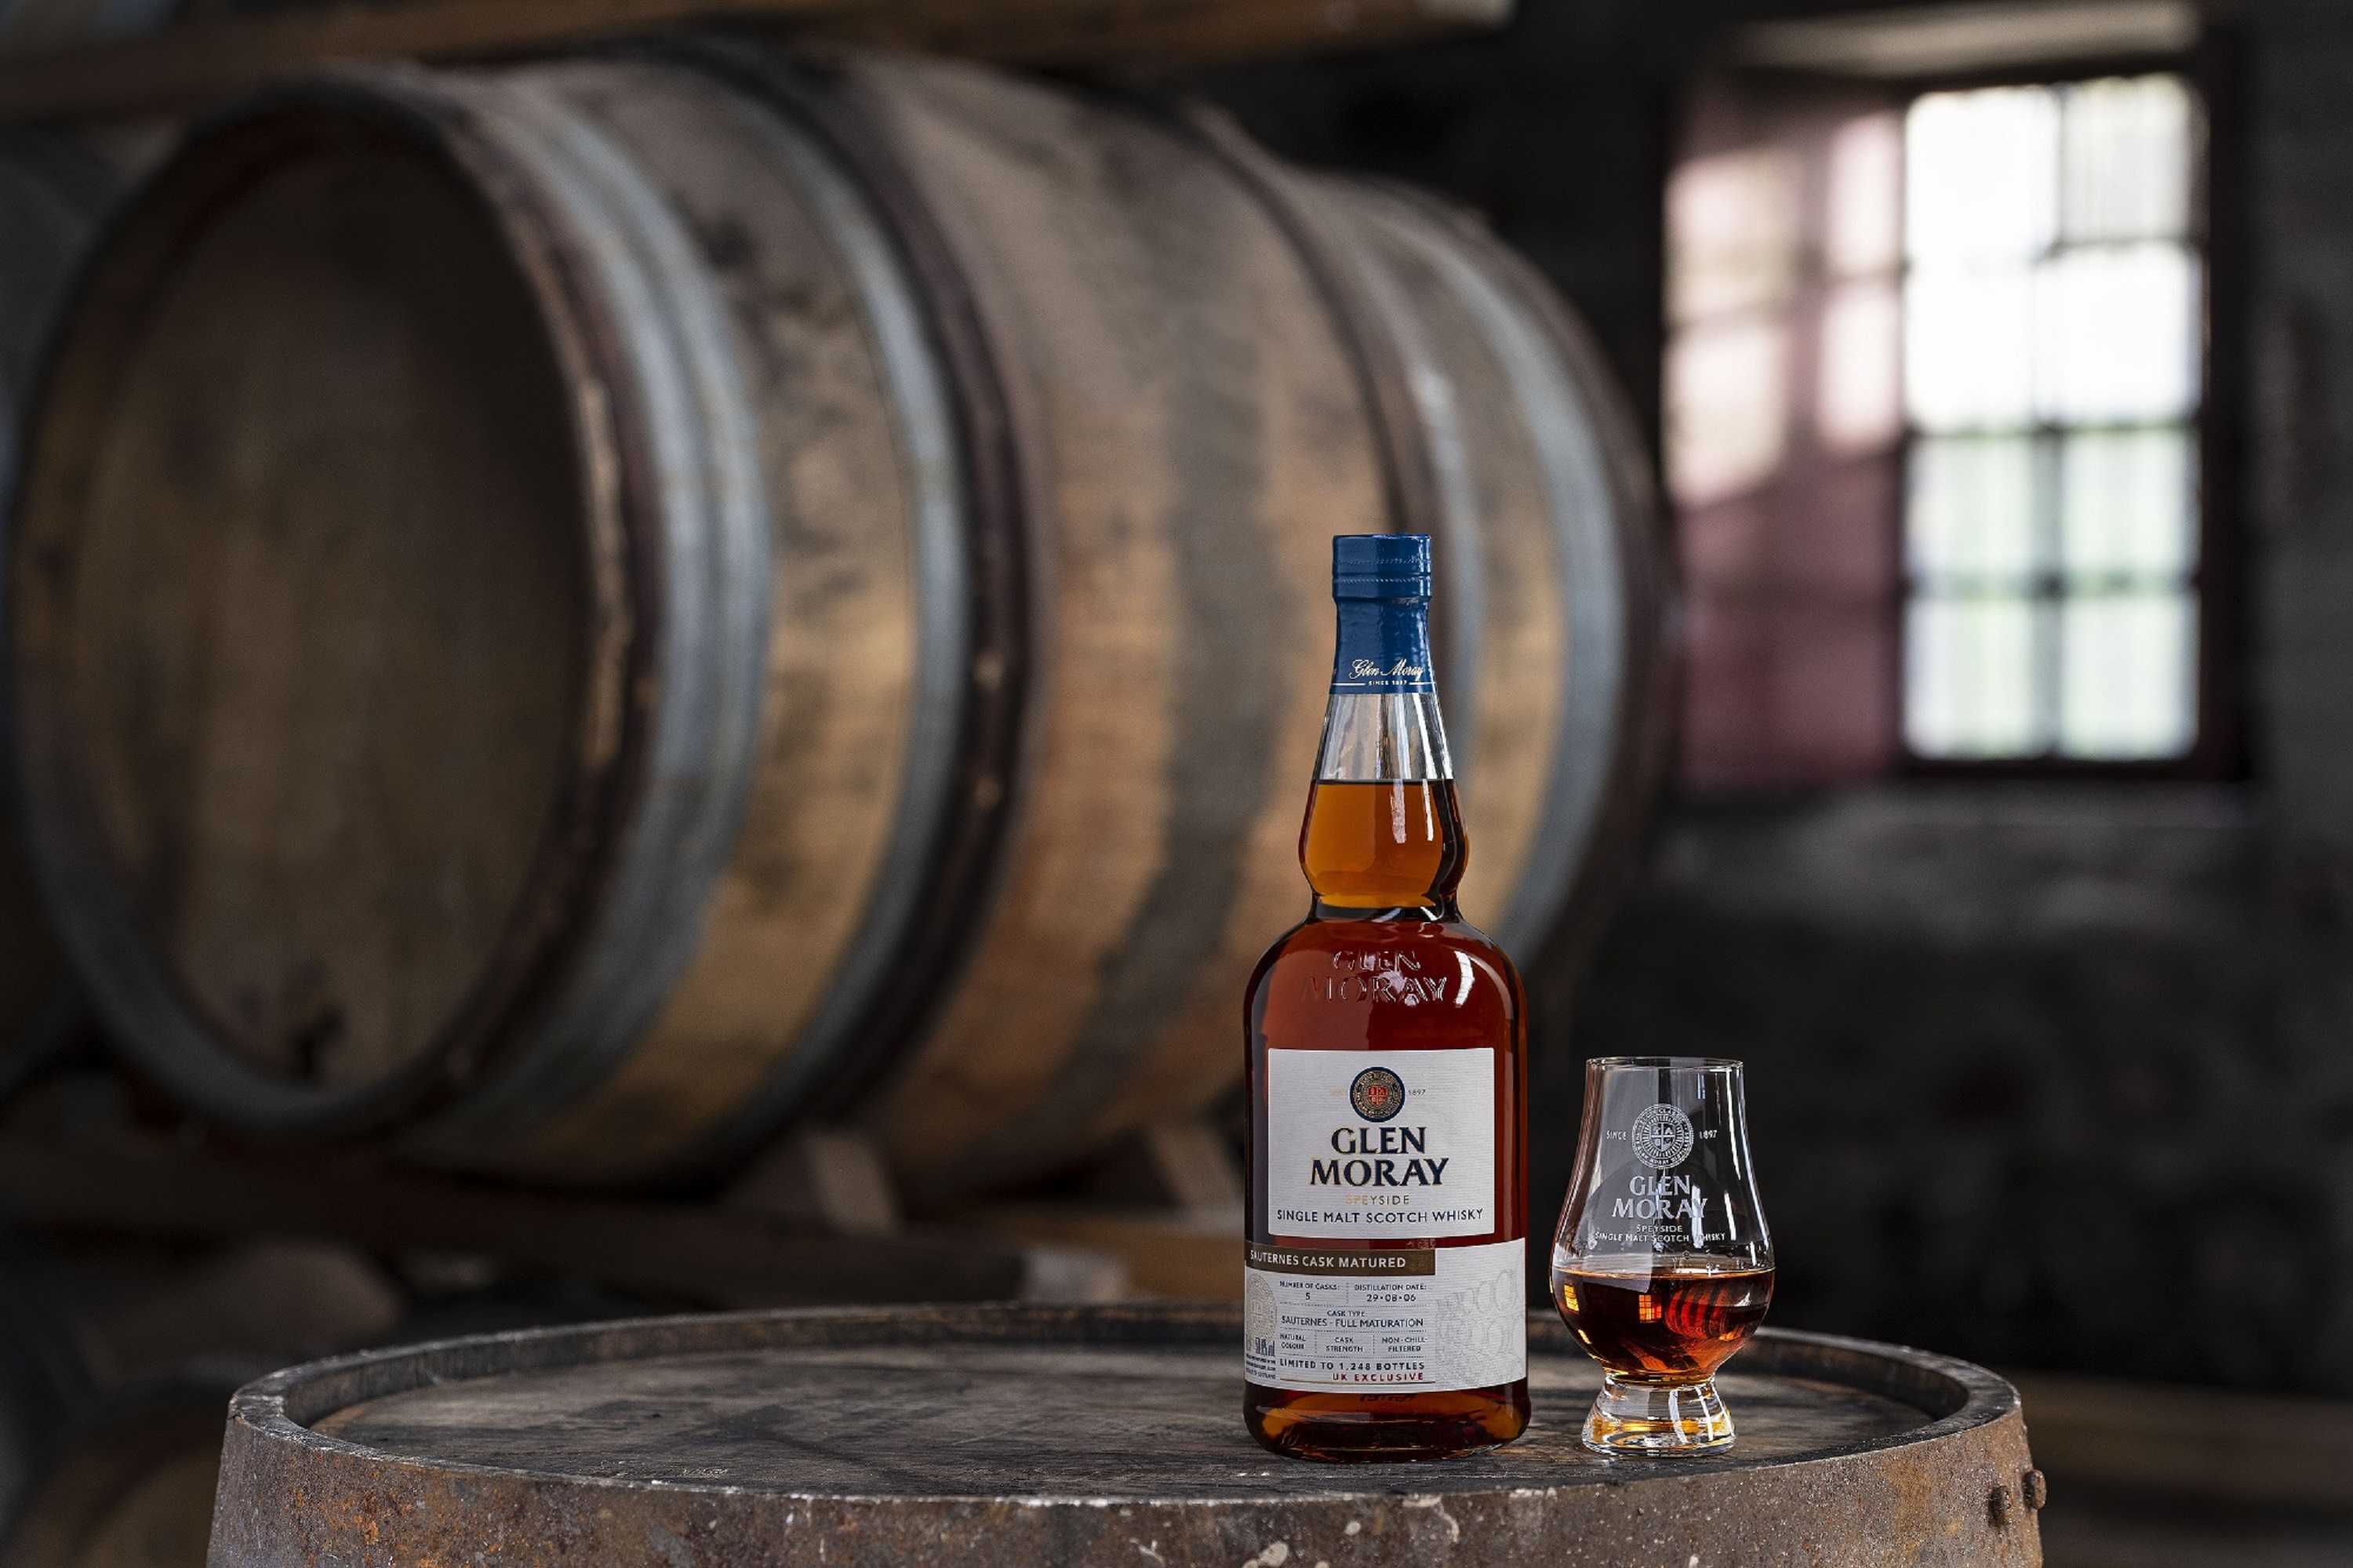 Glen Moray whisky bottle on barrel